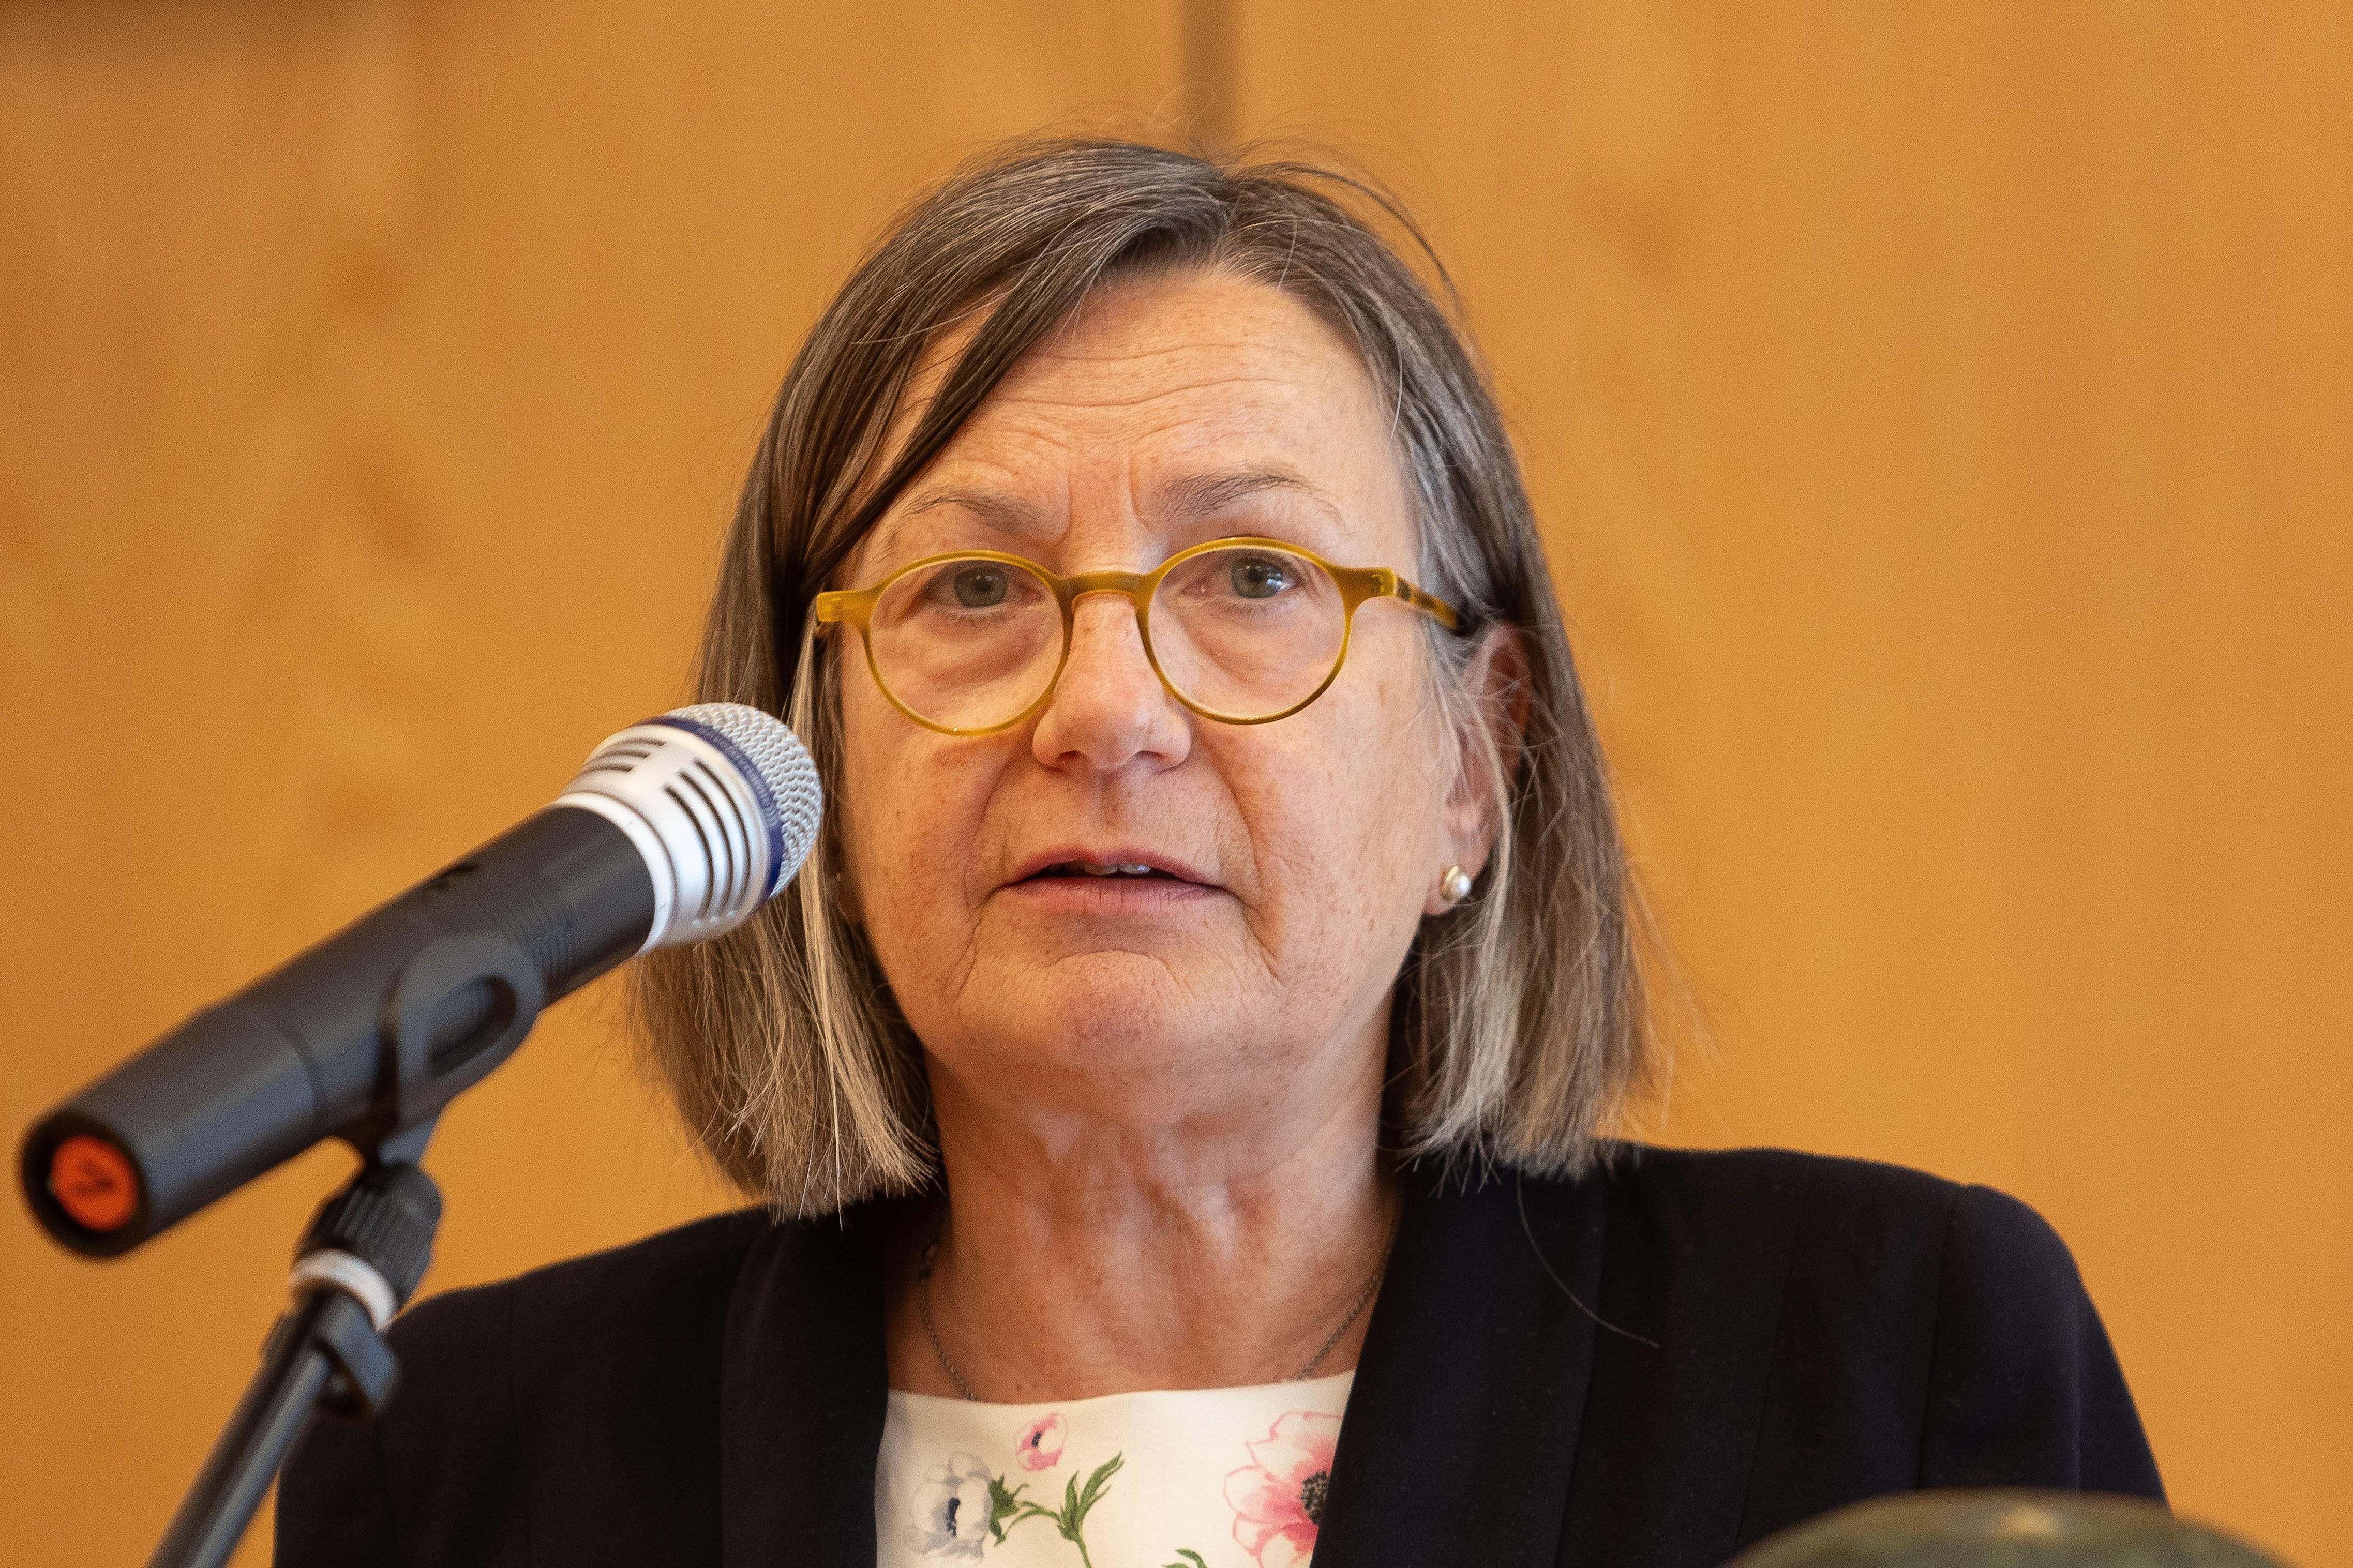 Laudatorin Annemarie Stoltenberg (Kulturredakteurin NDR)